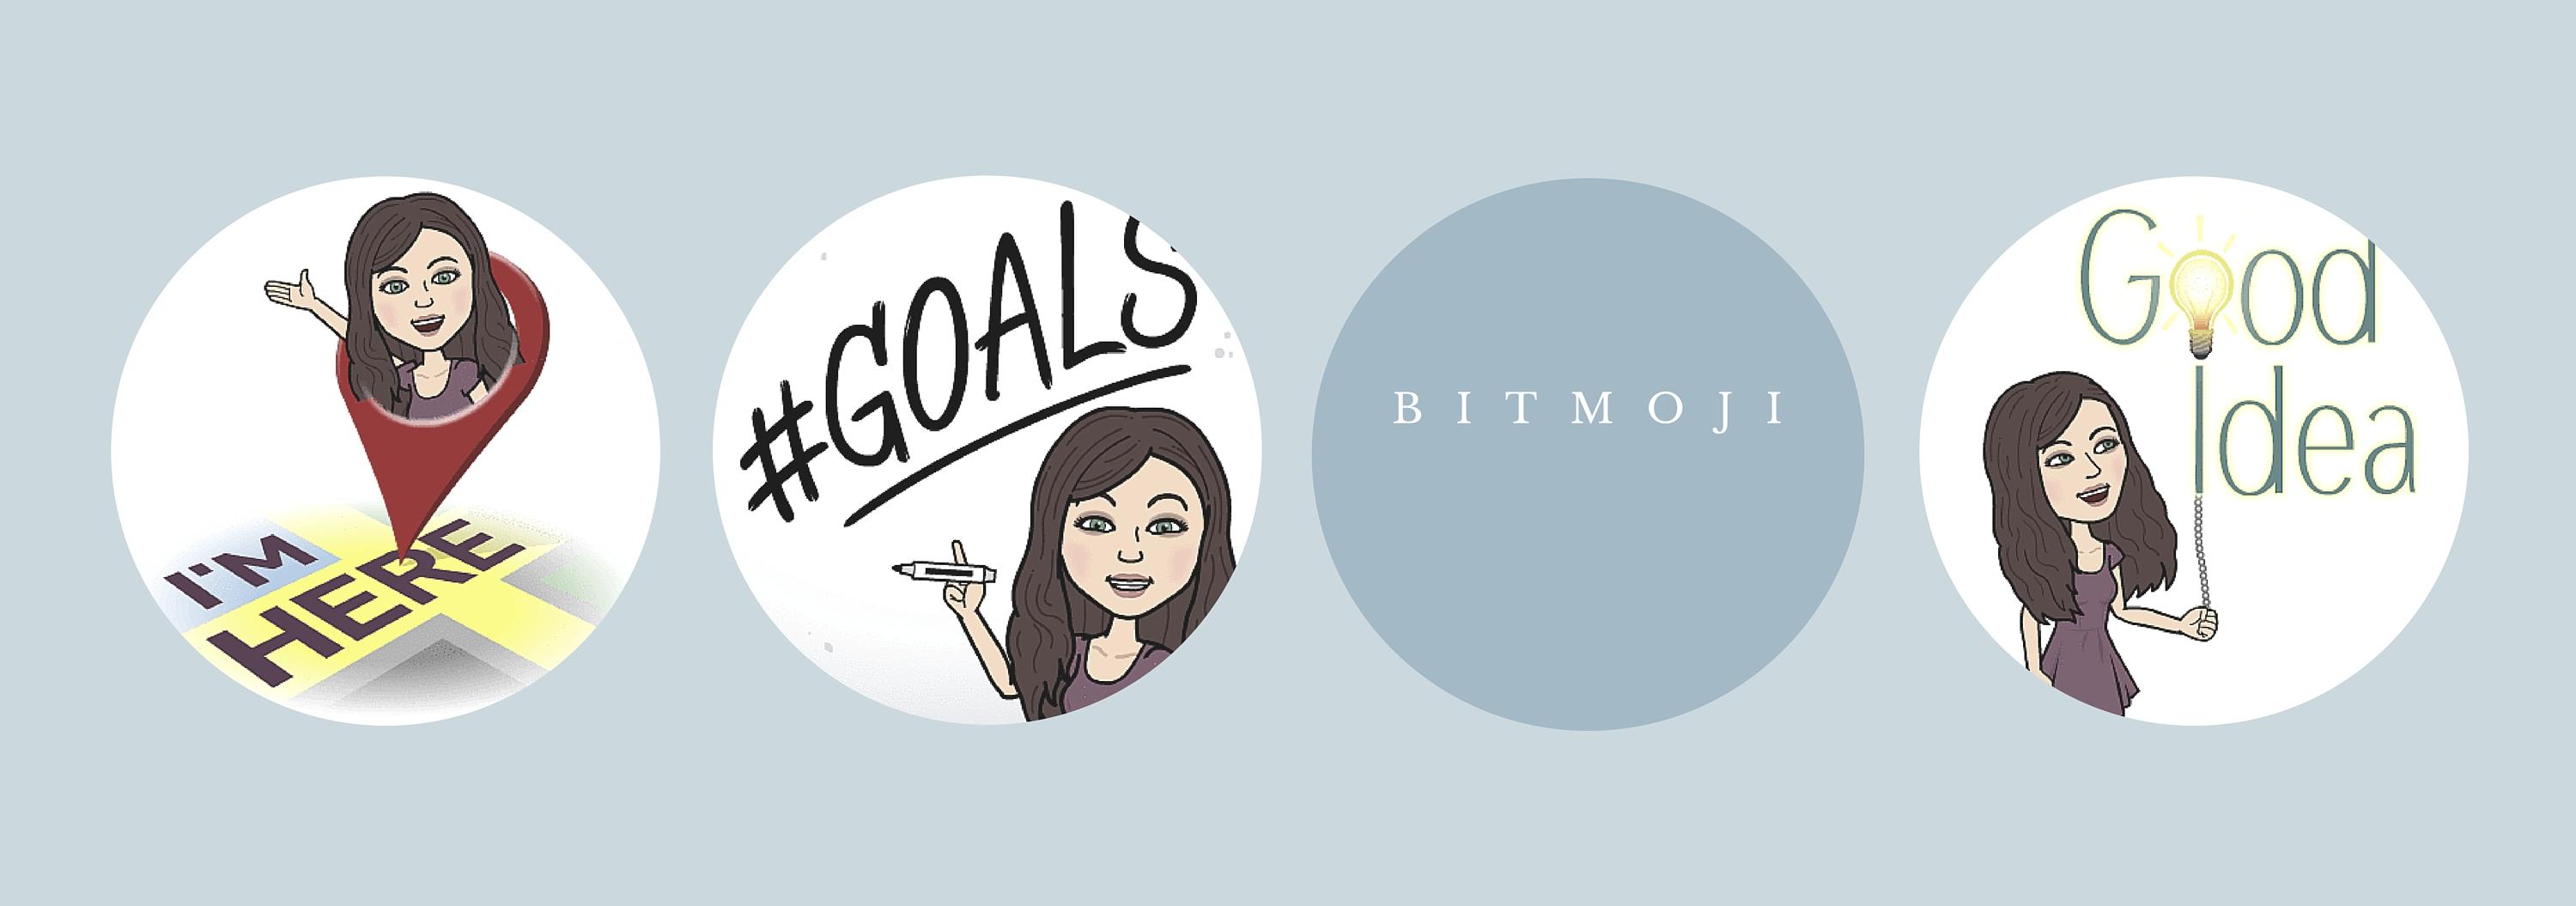 Bitmoji Logo - Do you even Bitmoji?